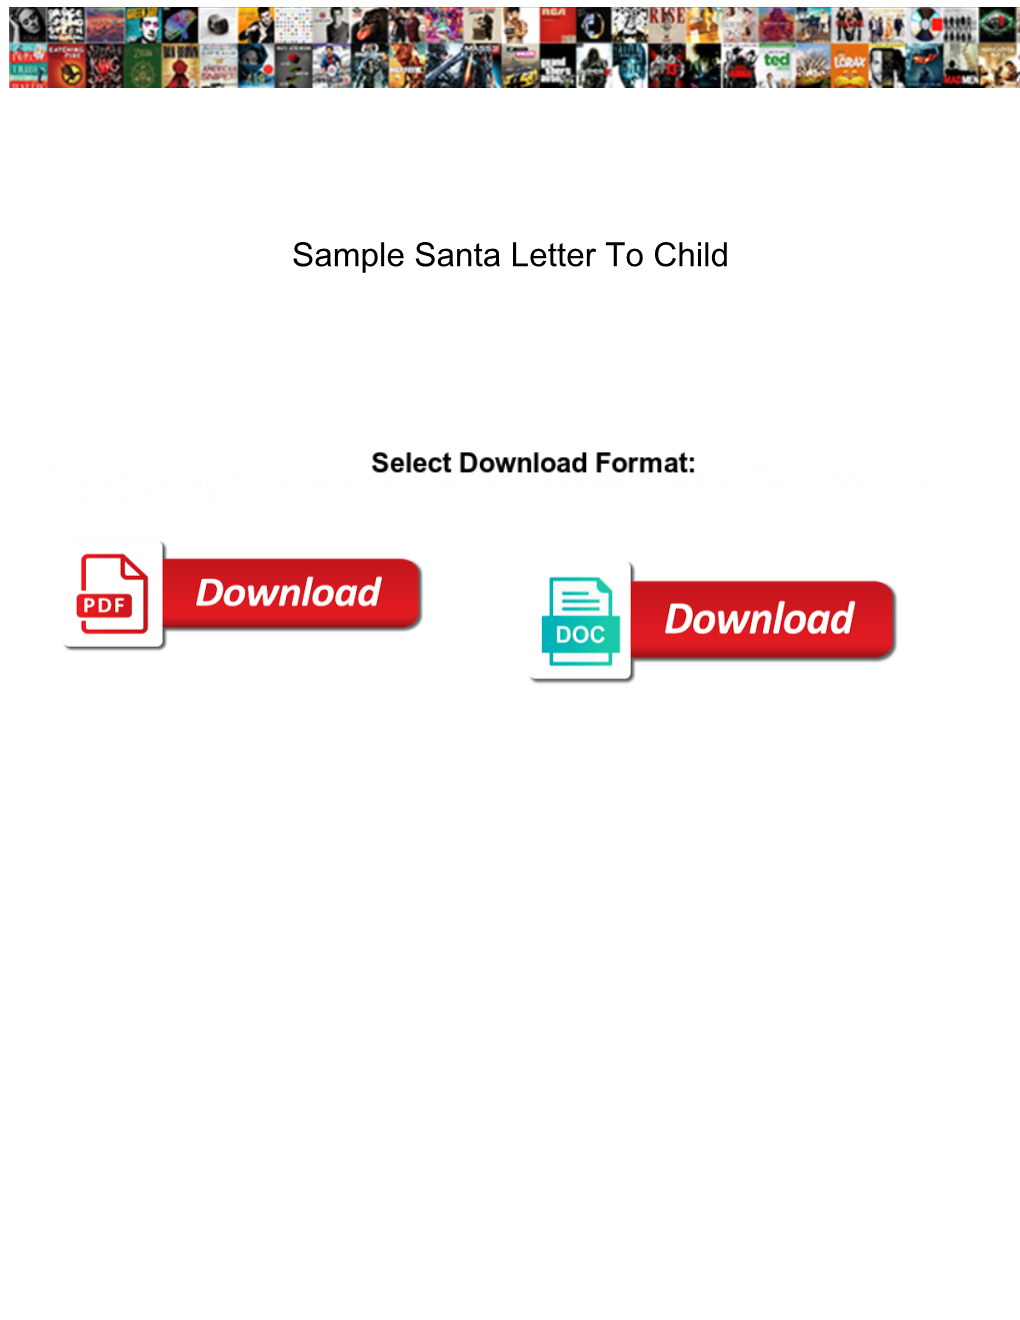 Sample Santa Letter to Child